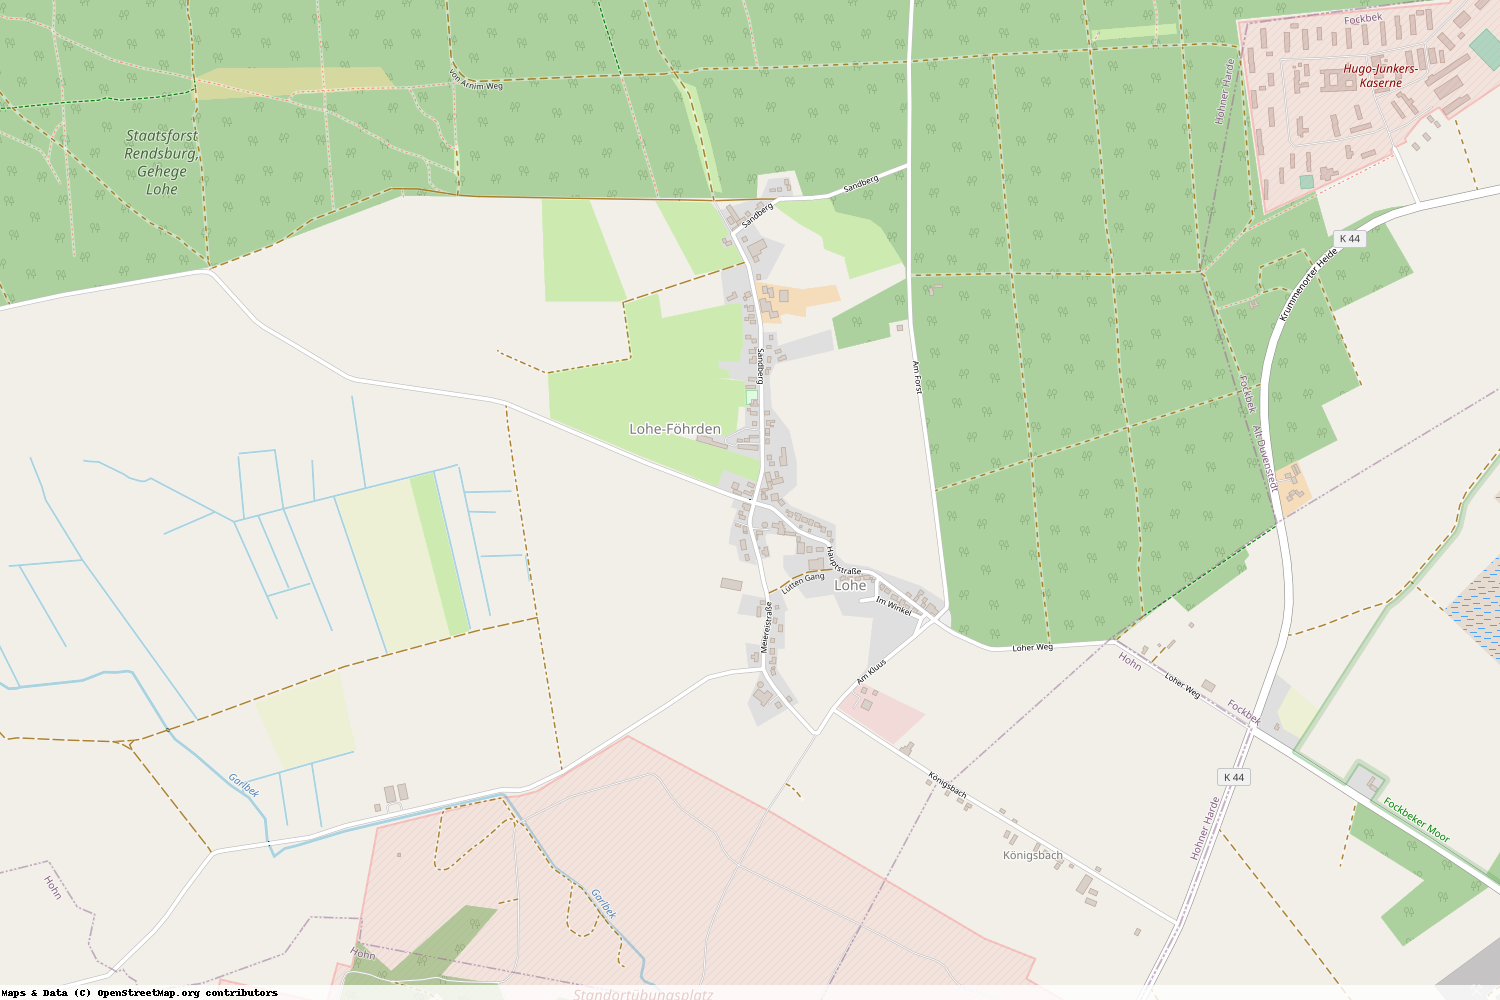 Ist gerade Stromausfall in Schleswig-Holstein - Rendsburg-Eckernförde - Lohe-Föhrden?